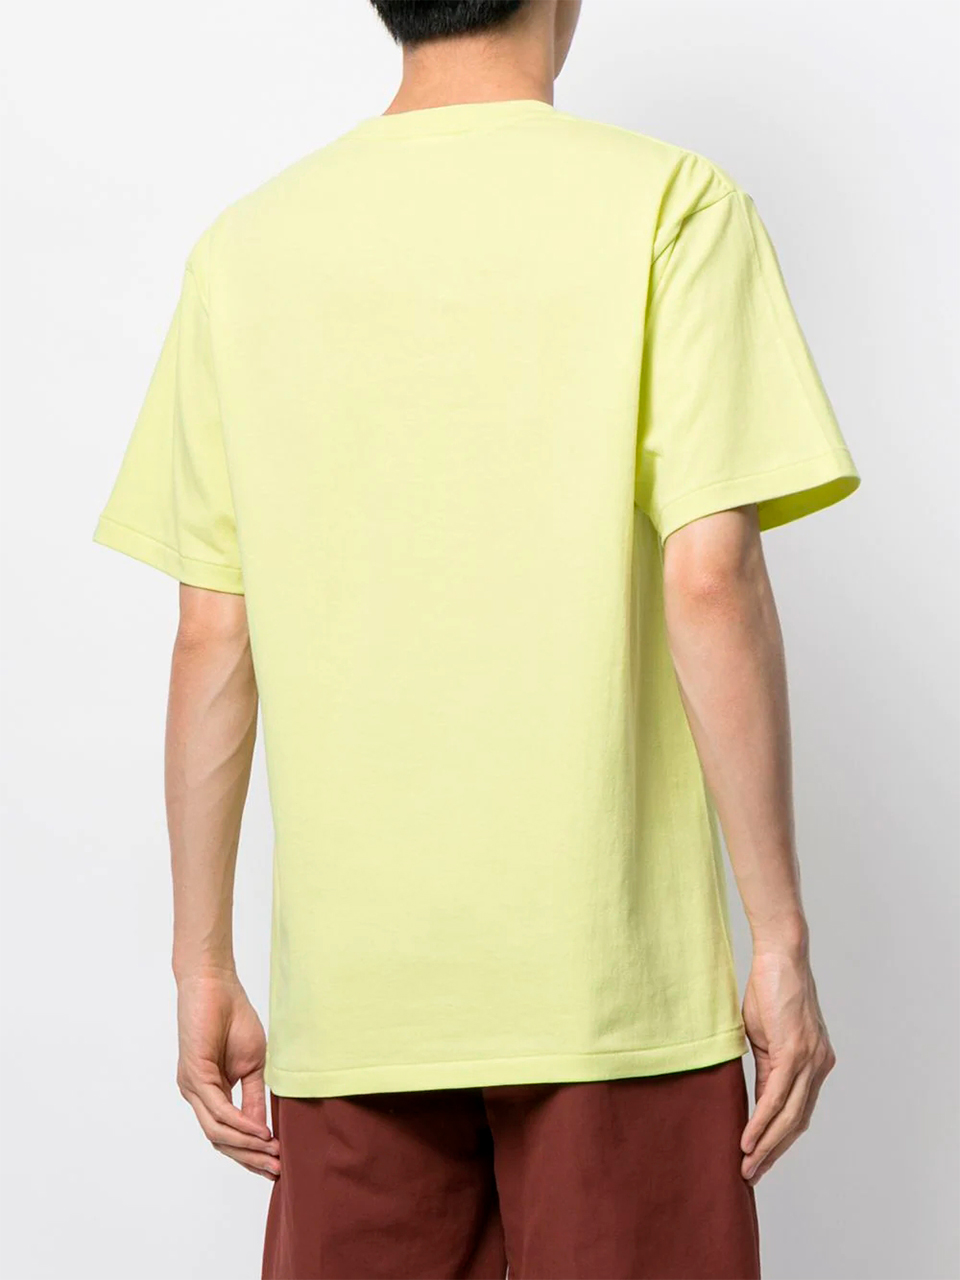 Imagem de: Camiseta BAPE Amarela com Estampa Baby Milo